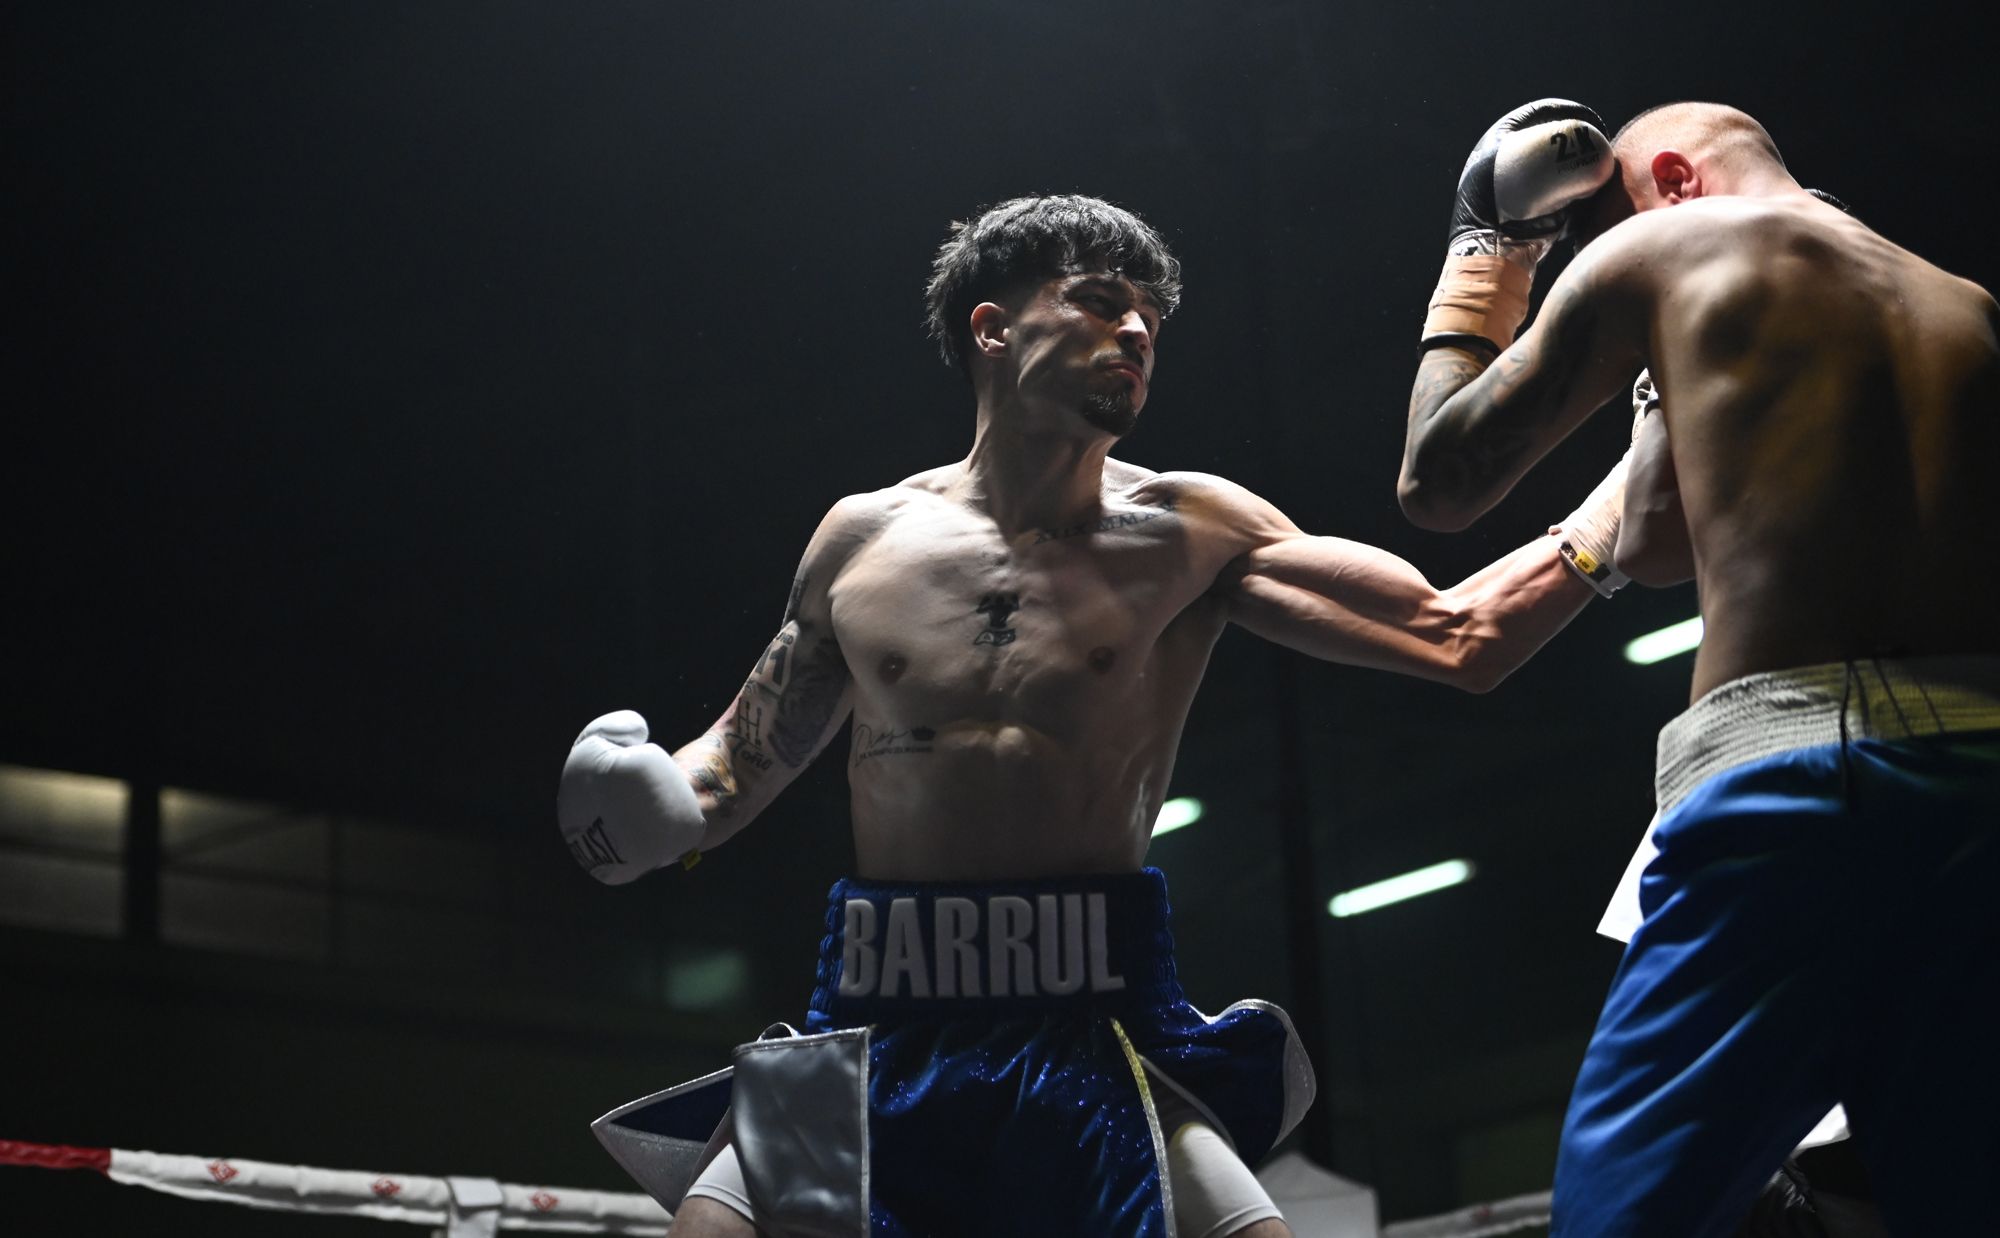 Barrul golpea a su rival durante su último combate en León. | SAÚL ARÉN